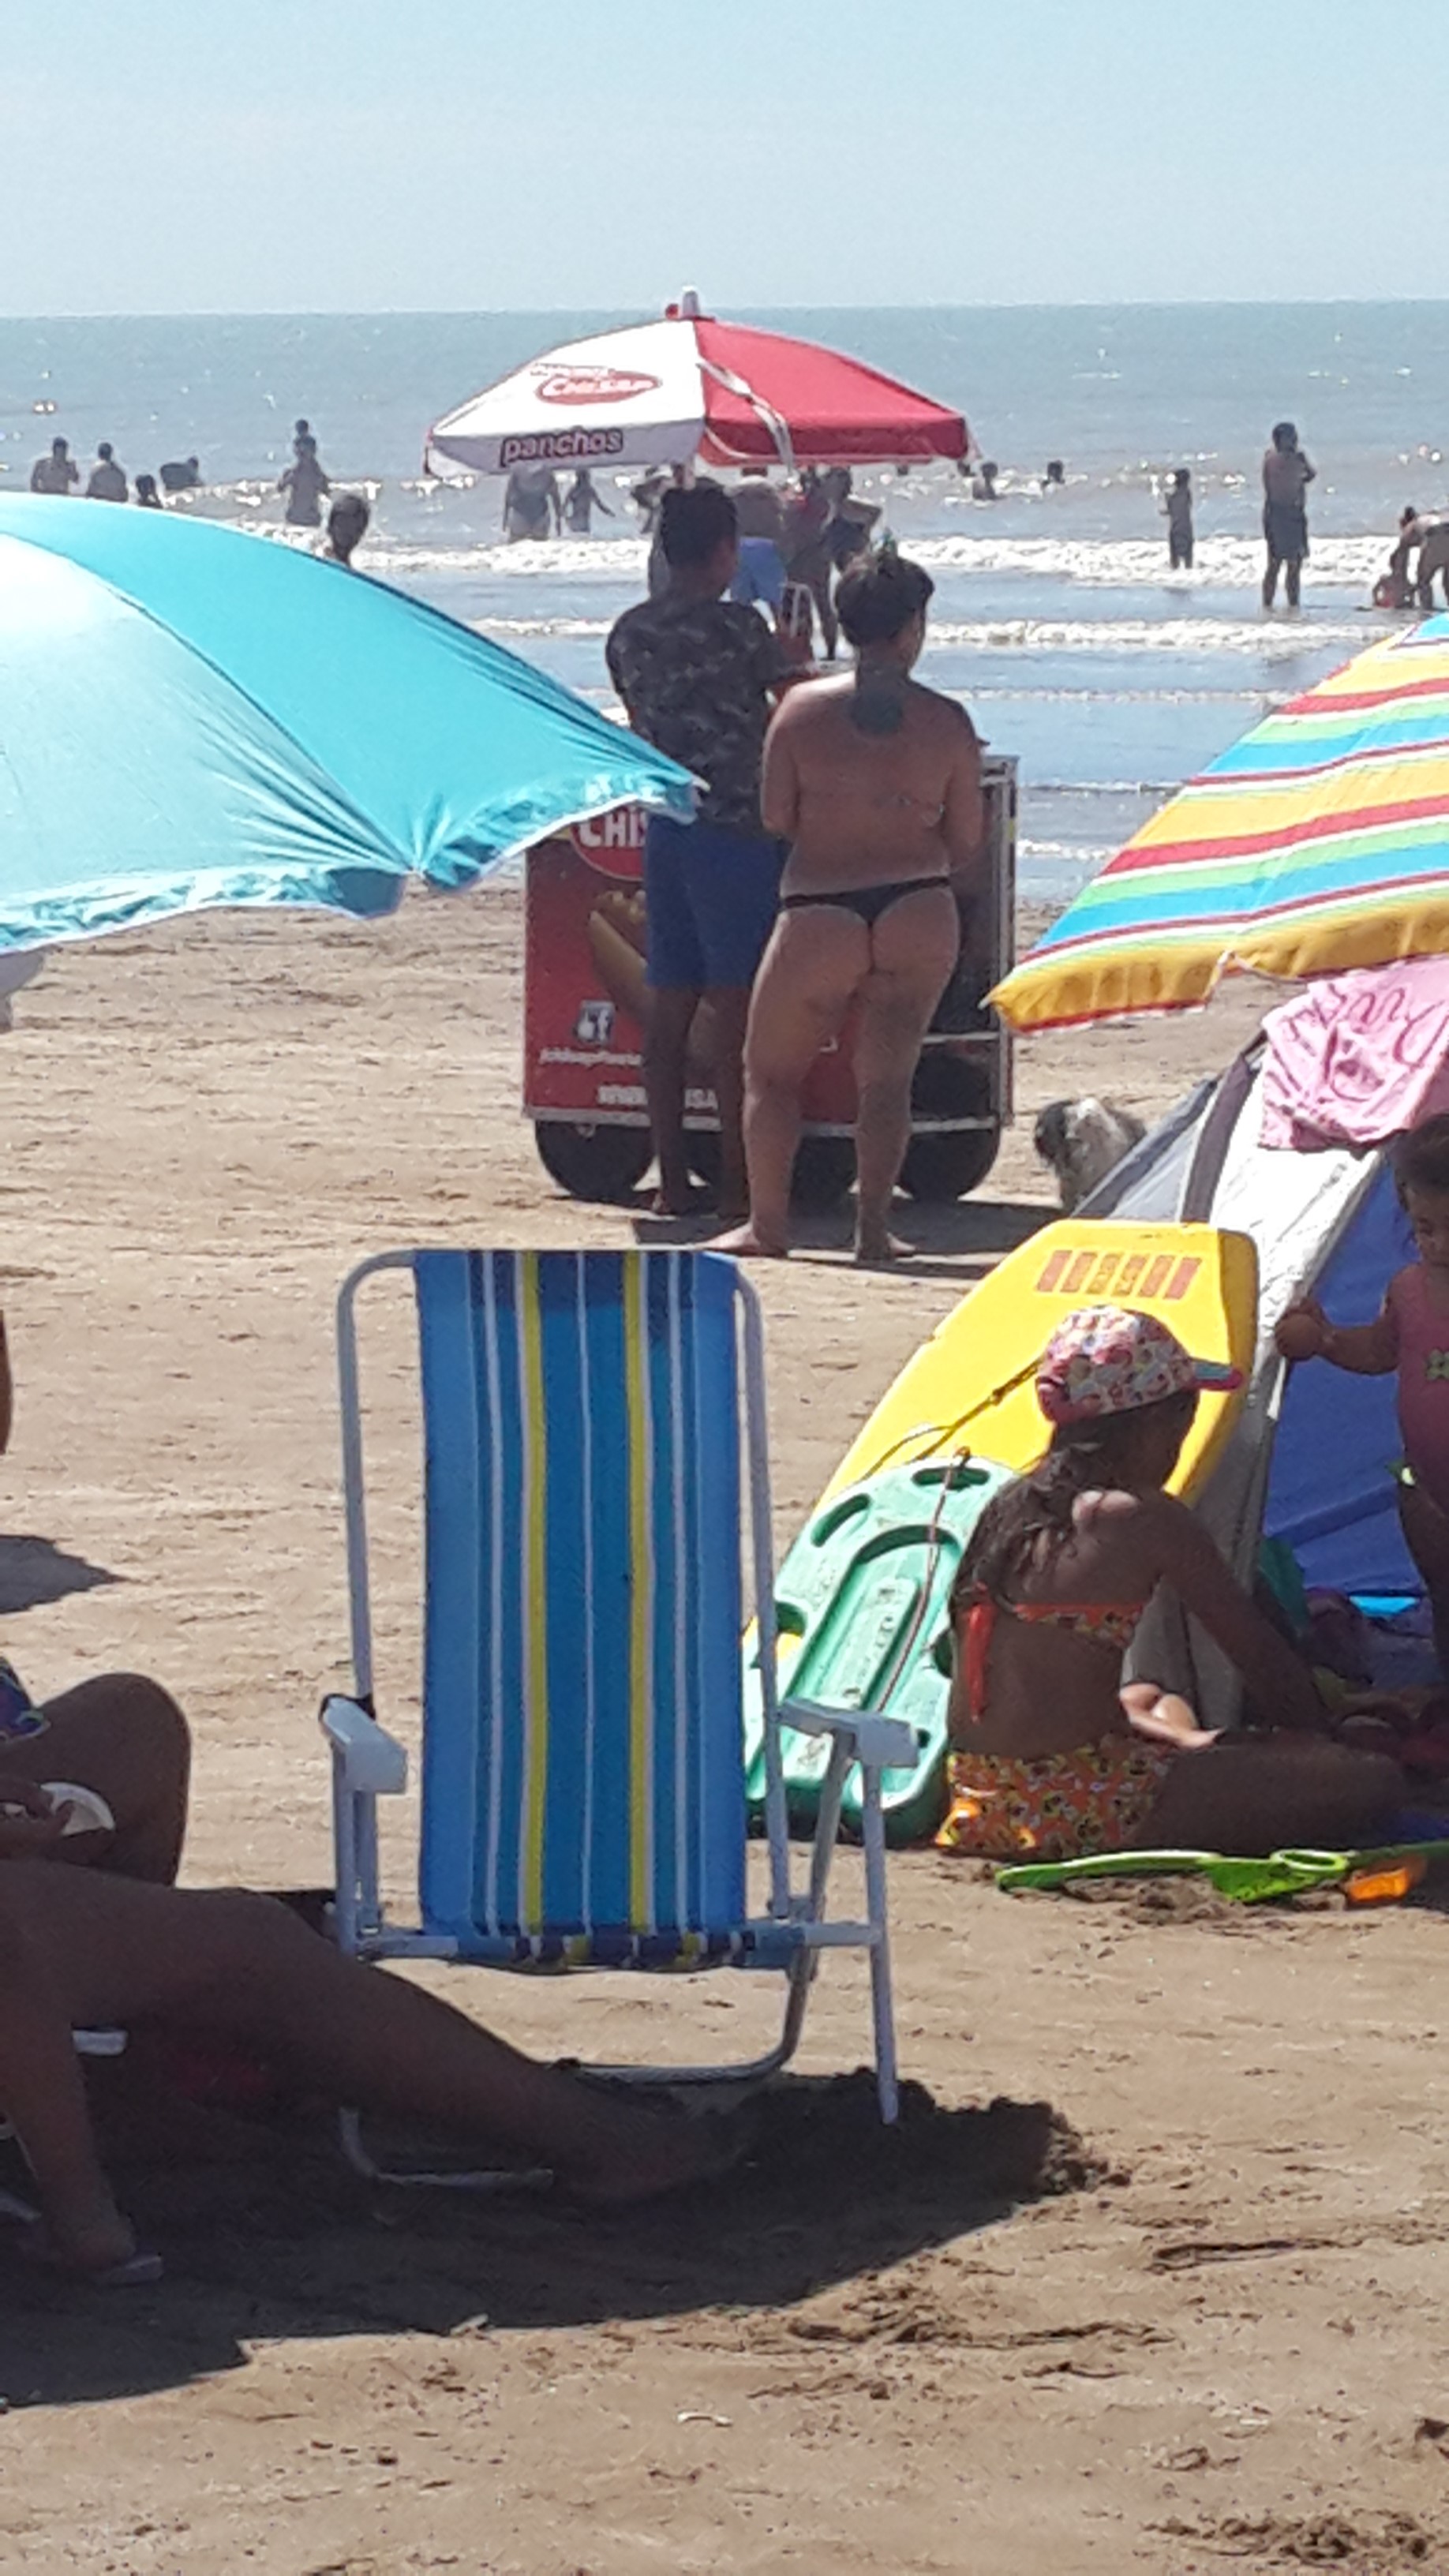 Entangadas en la playa [Argentina verano 2017 - P1]